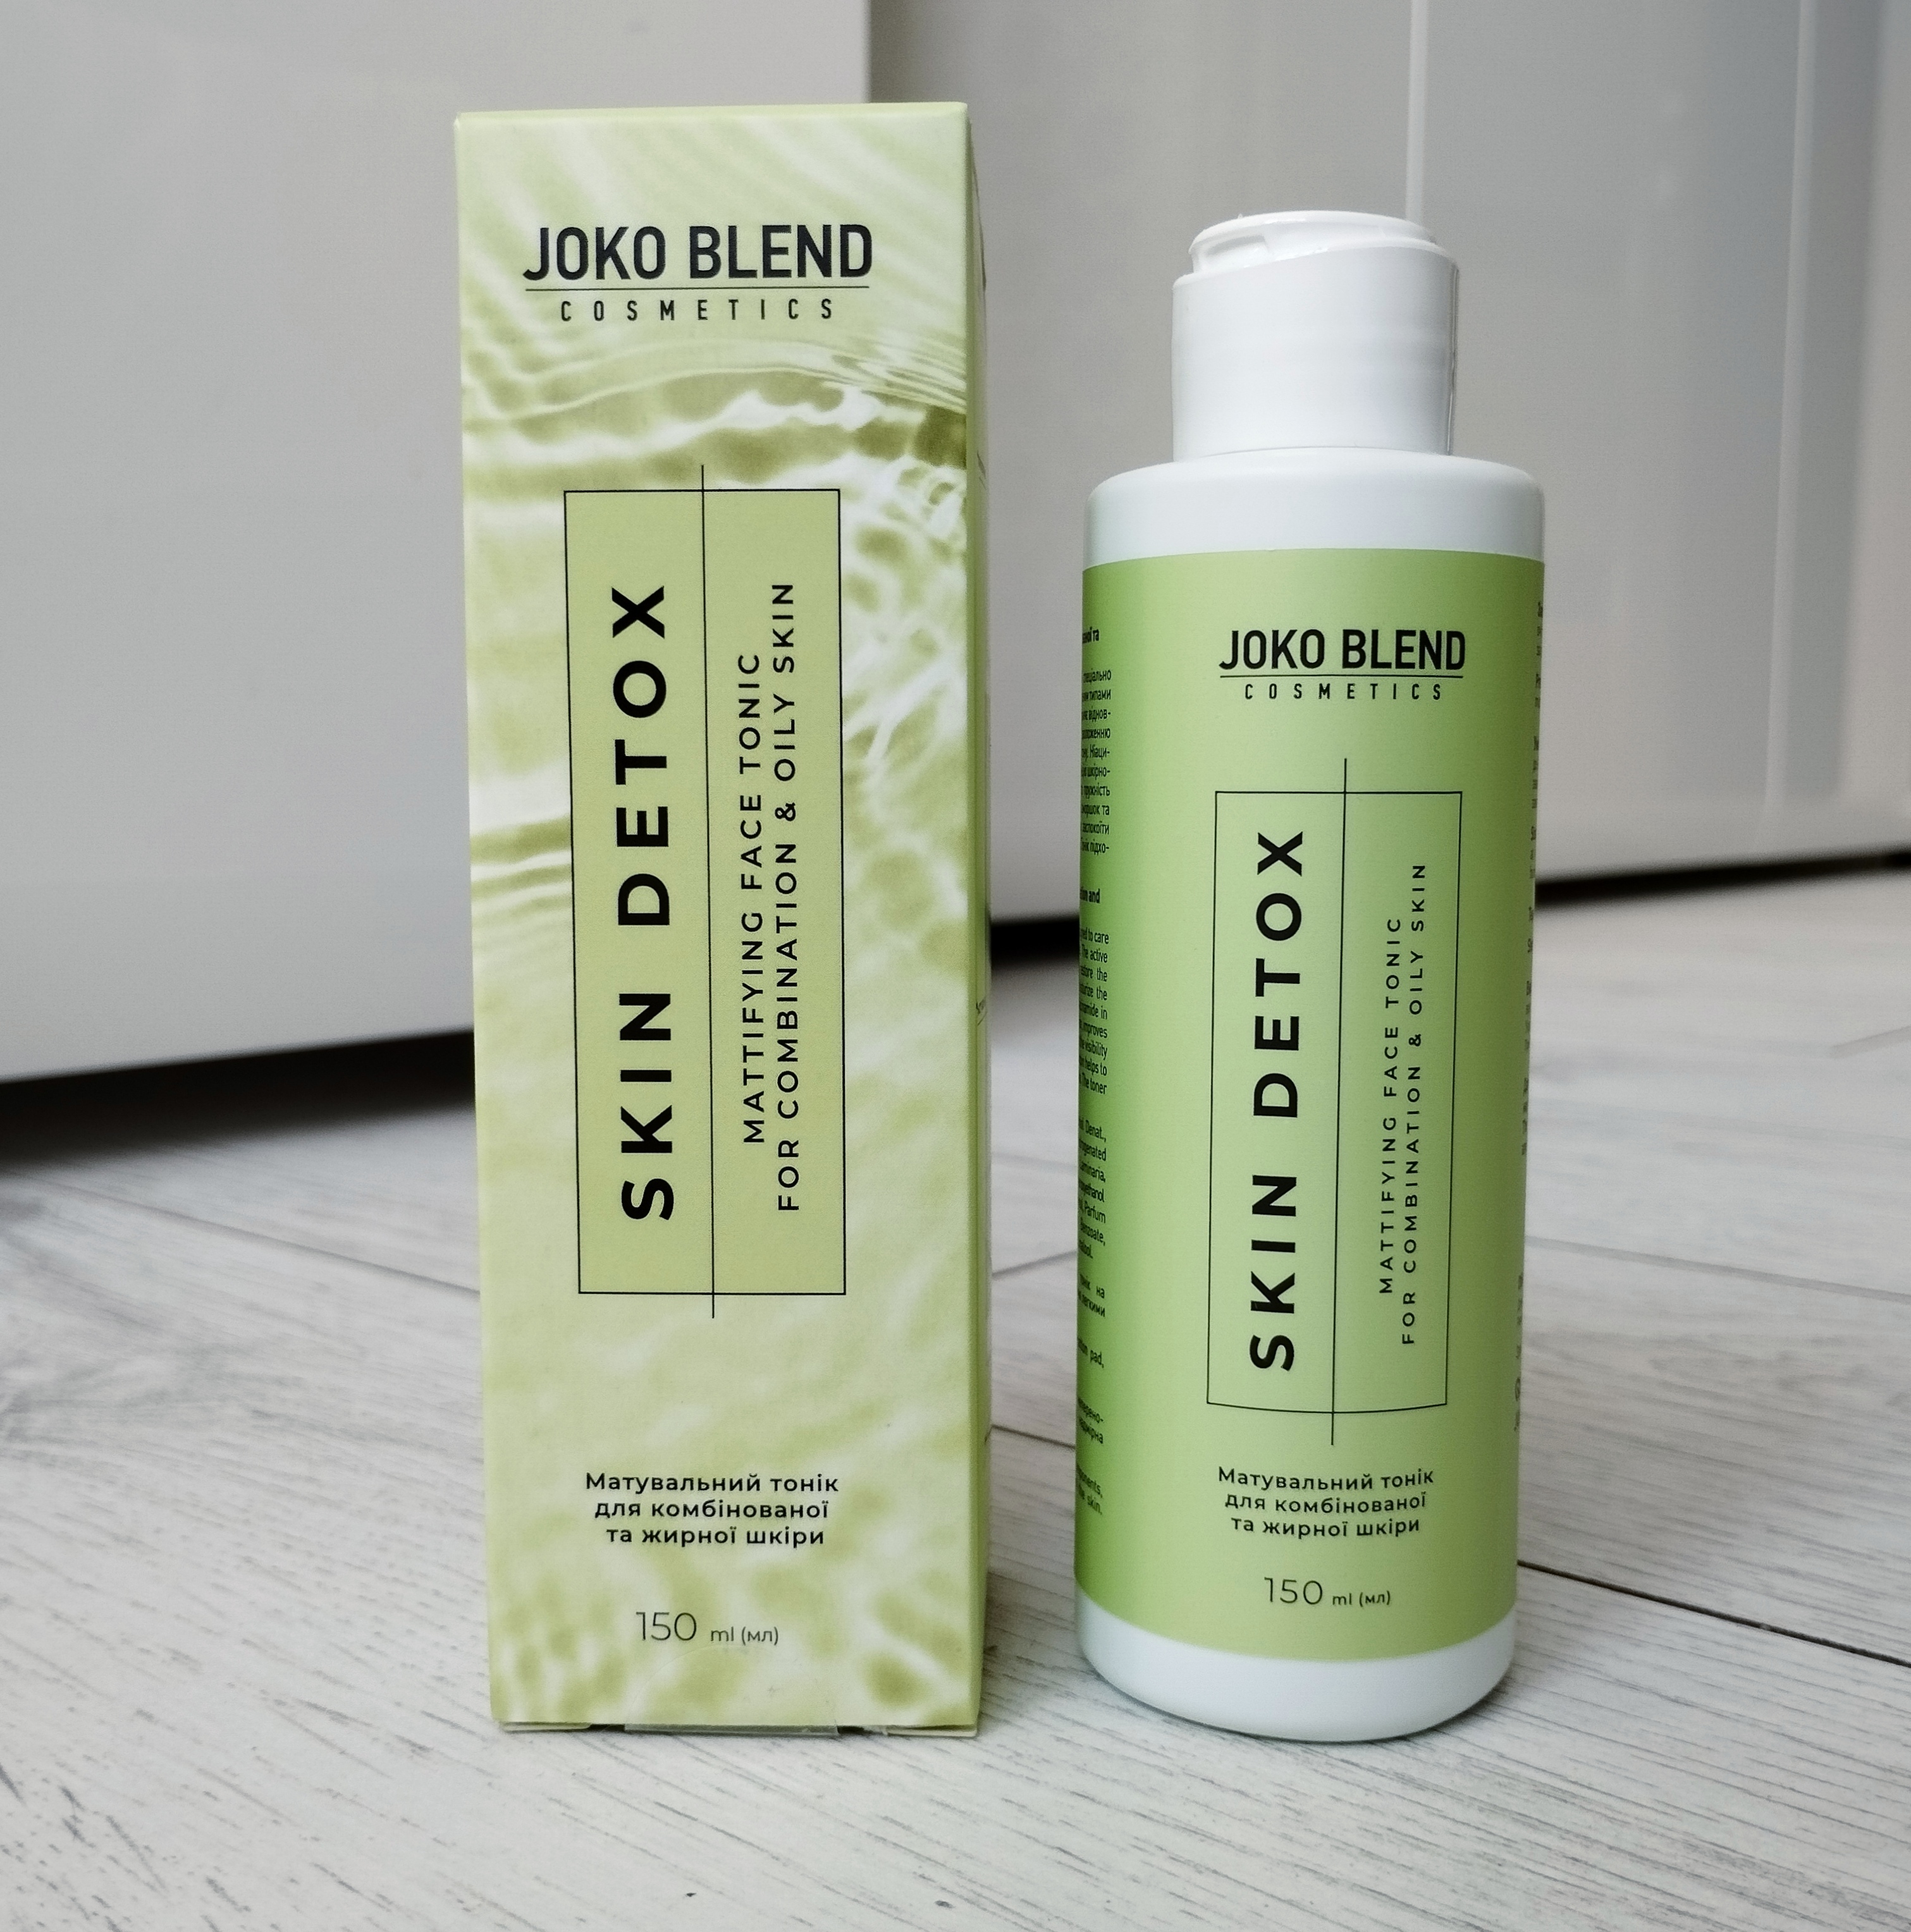 Joko Blend Skin Detox Mattifying Face Tonic